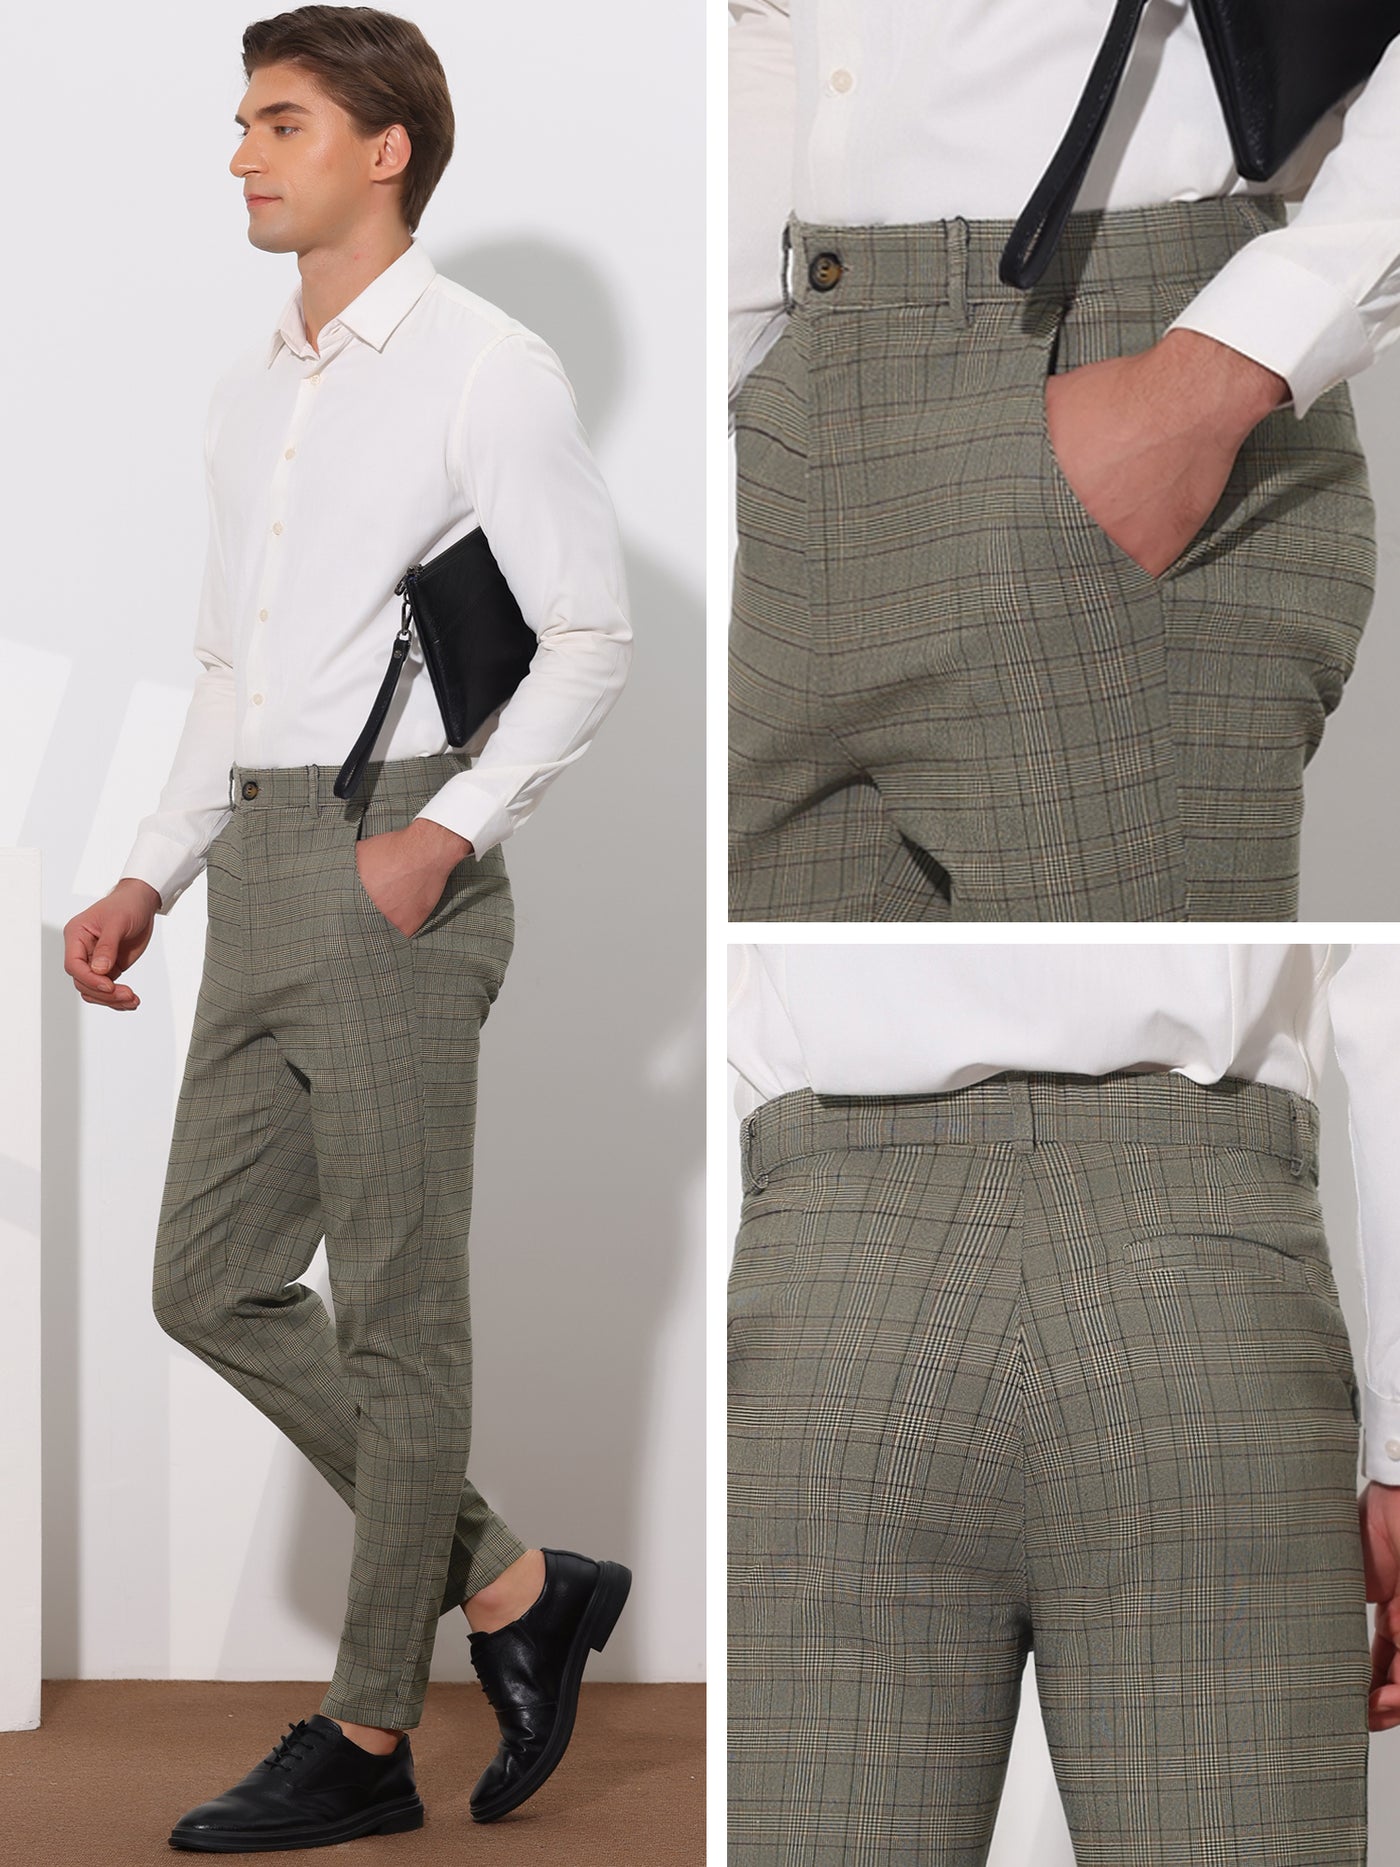 Bublédon Plaid Pants for Men's Flat Front Contrasting Colors Plaids Pattern Business Trousers